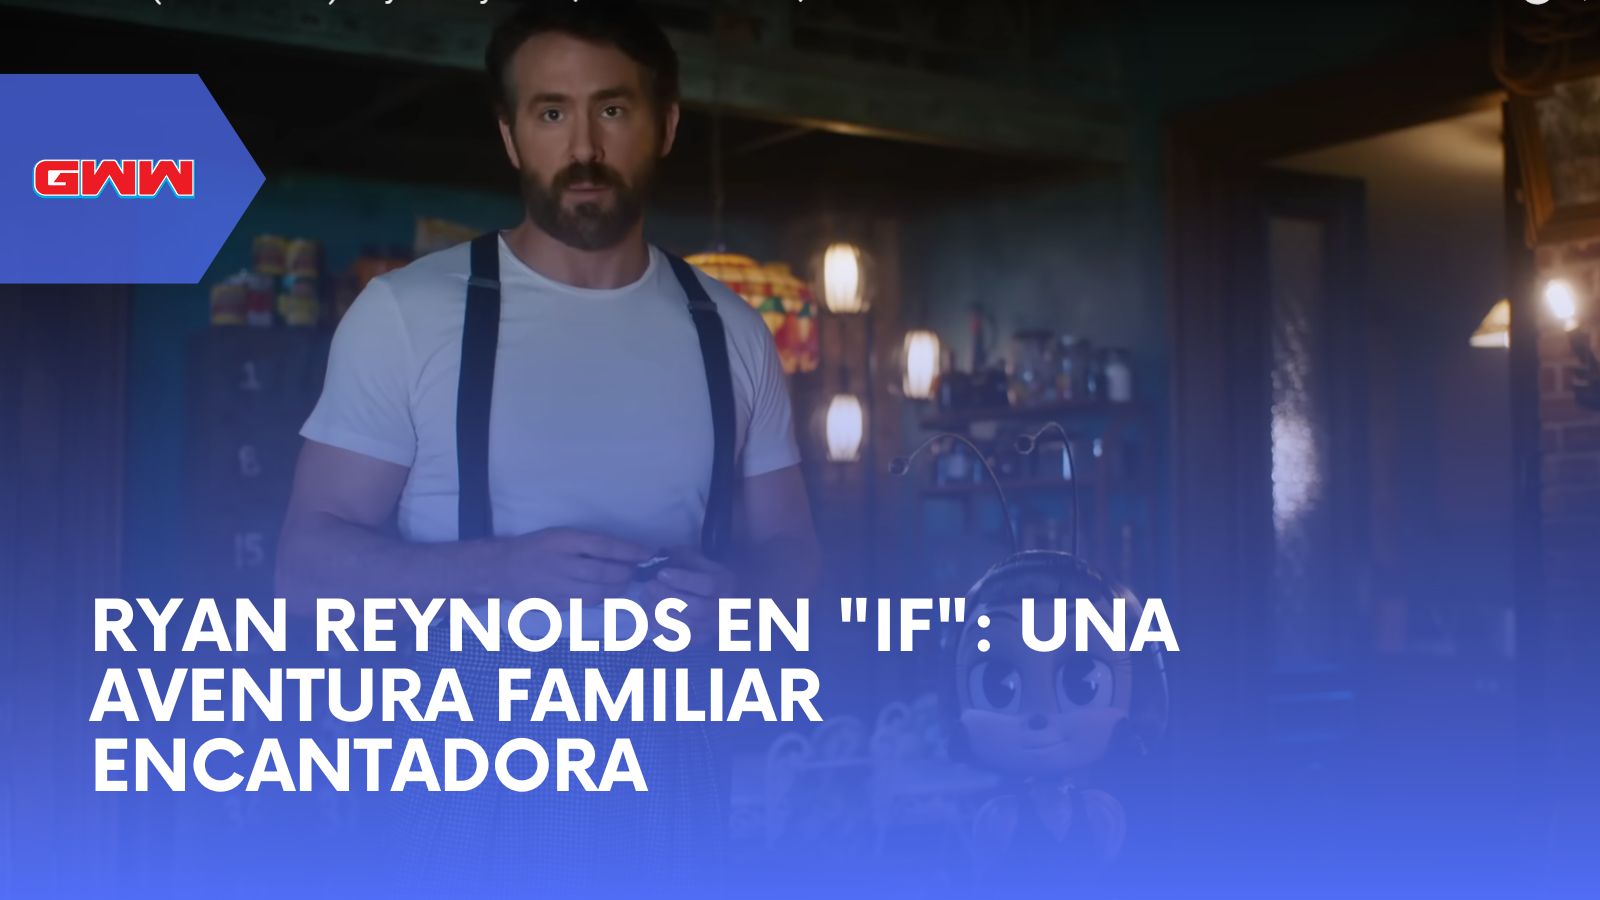 Ryan Reynolds en "IF": Una Aventura Familiar Encantadora